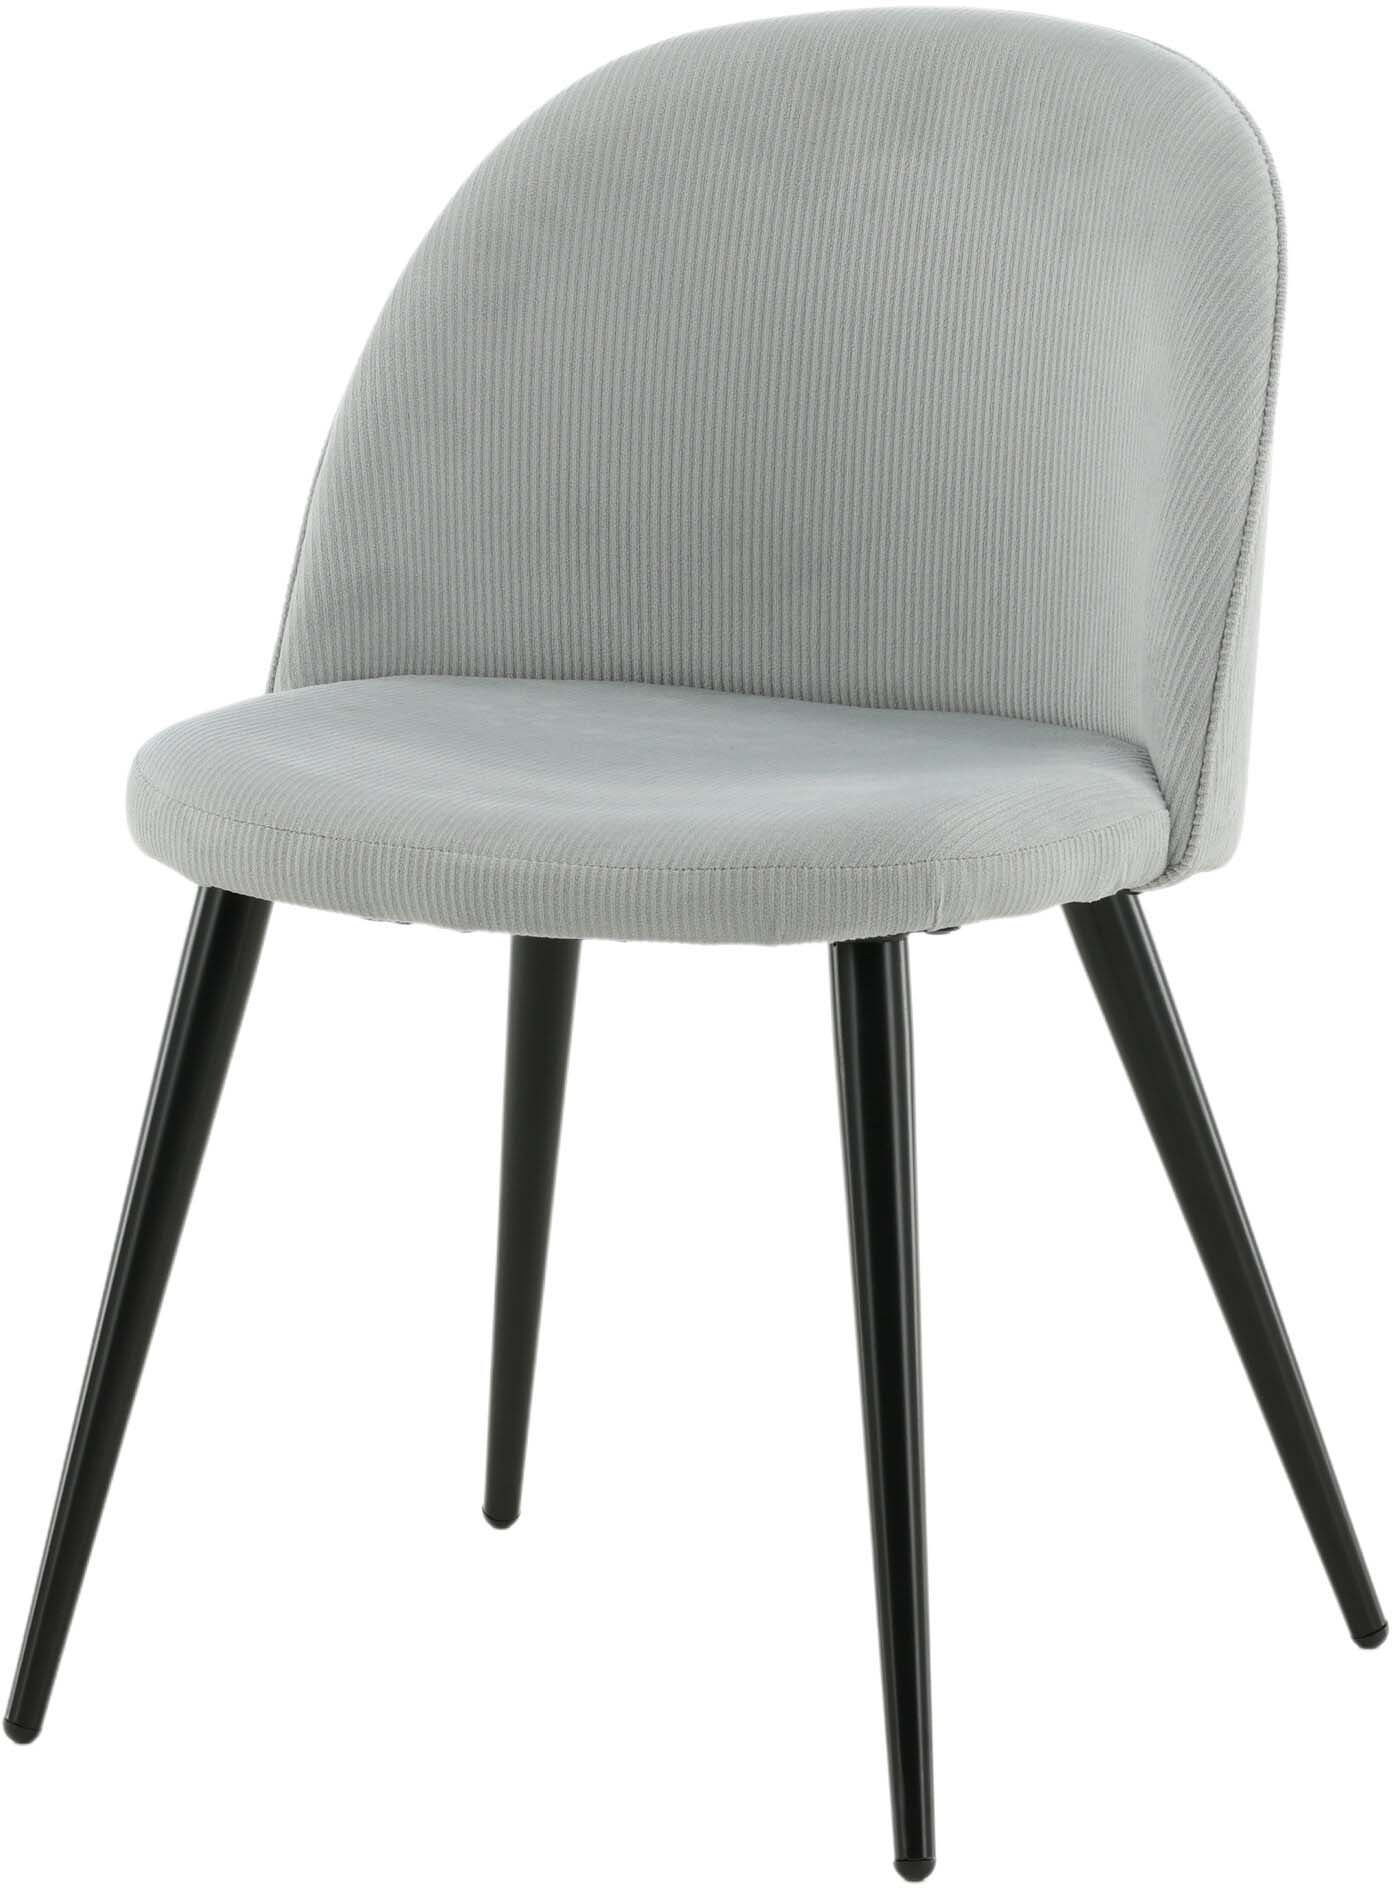 Velvet Matstol Manchester Stuhl in Hellgrau / Schwarz präsentiert im Onlineshop von KAQTU Design AG. Schalenstuhl ist von Venture Home